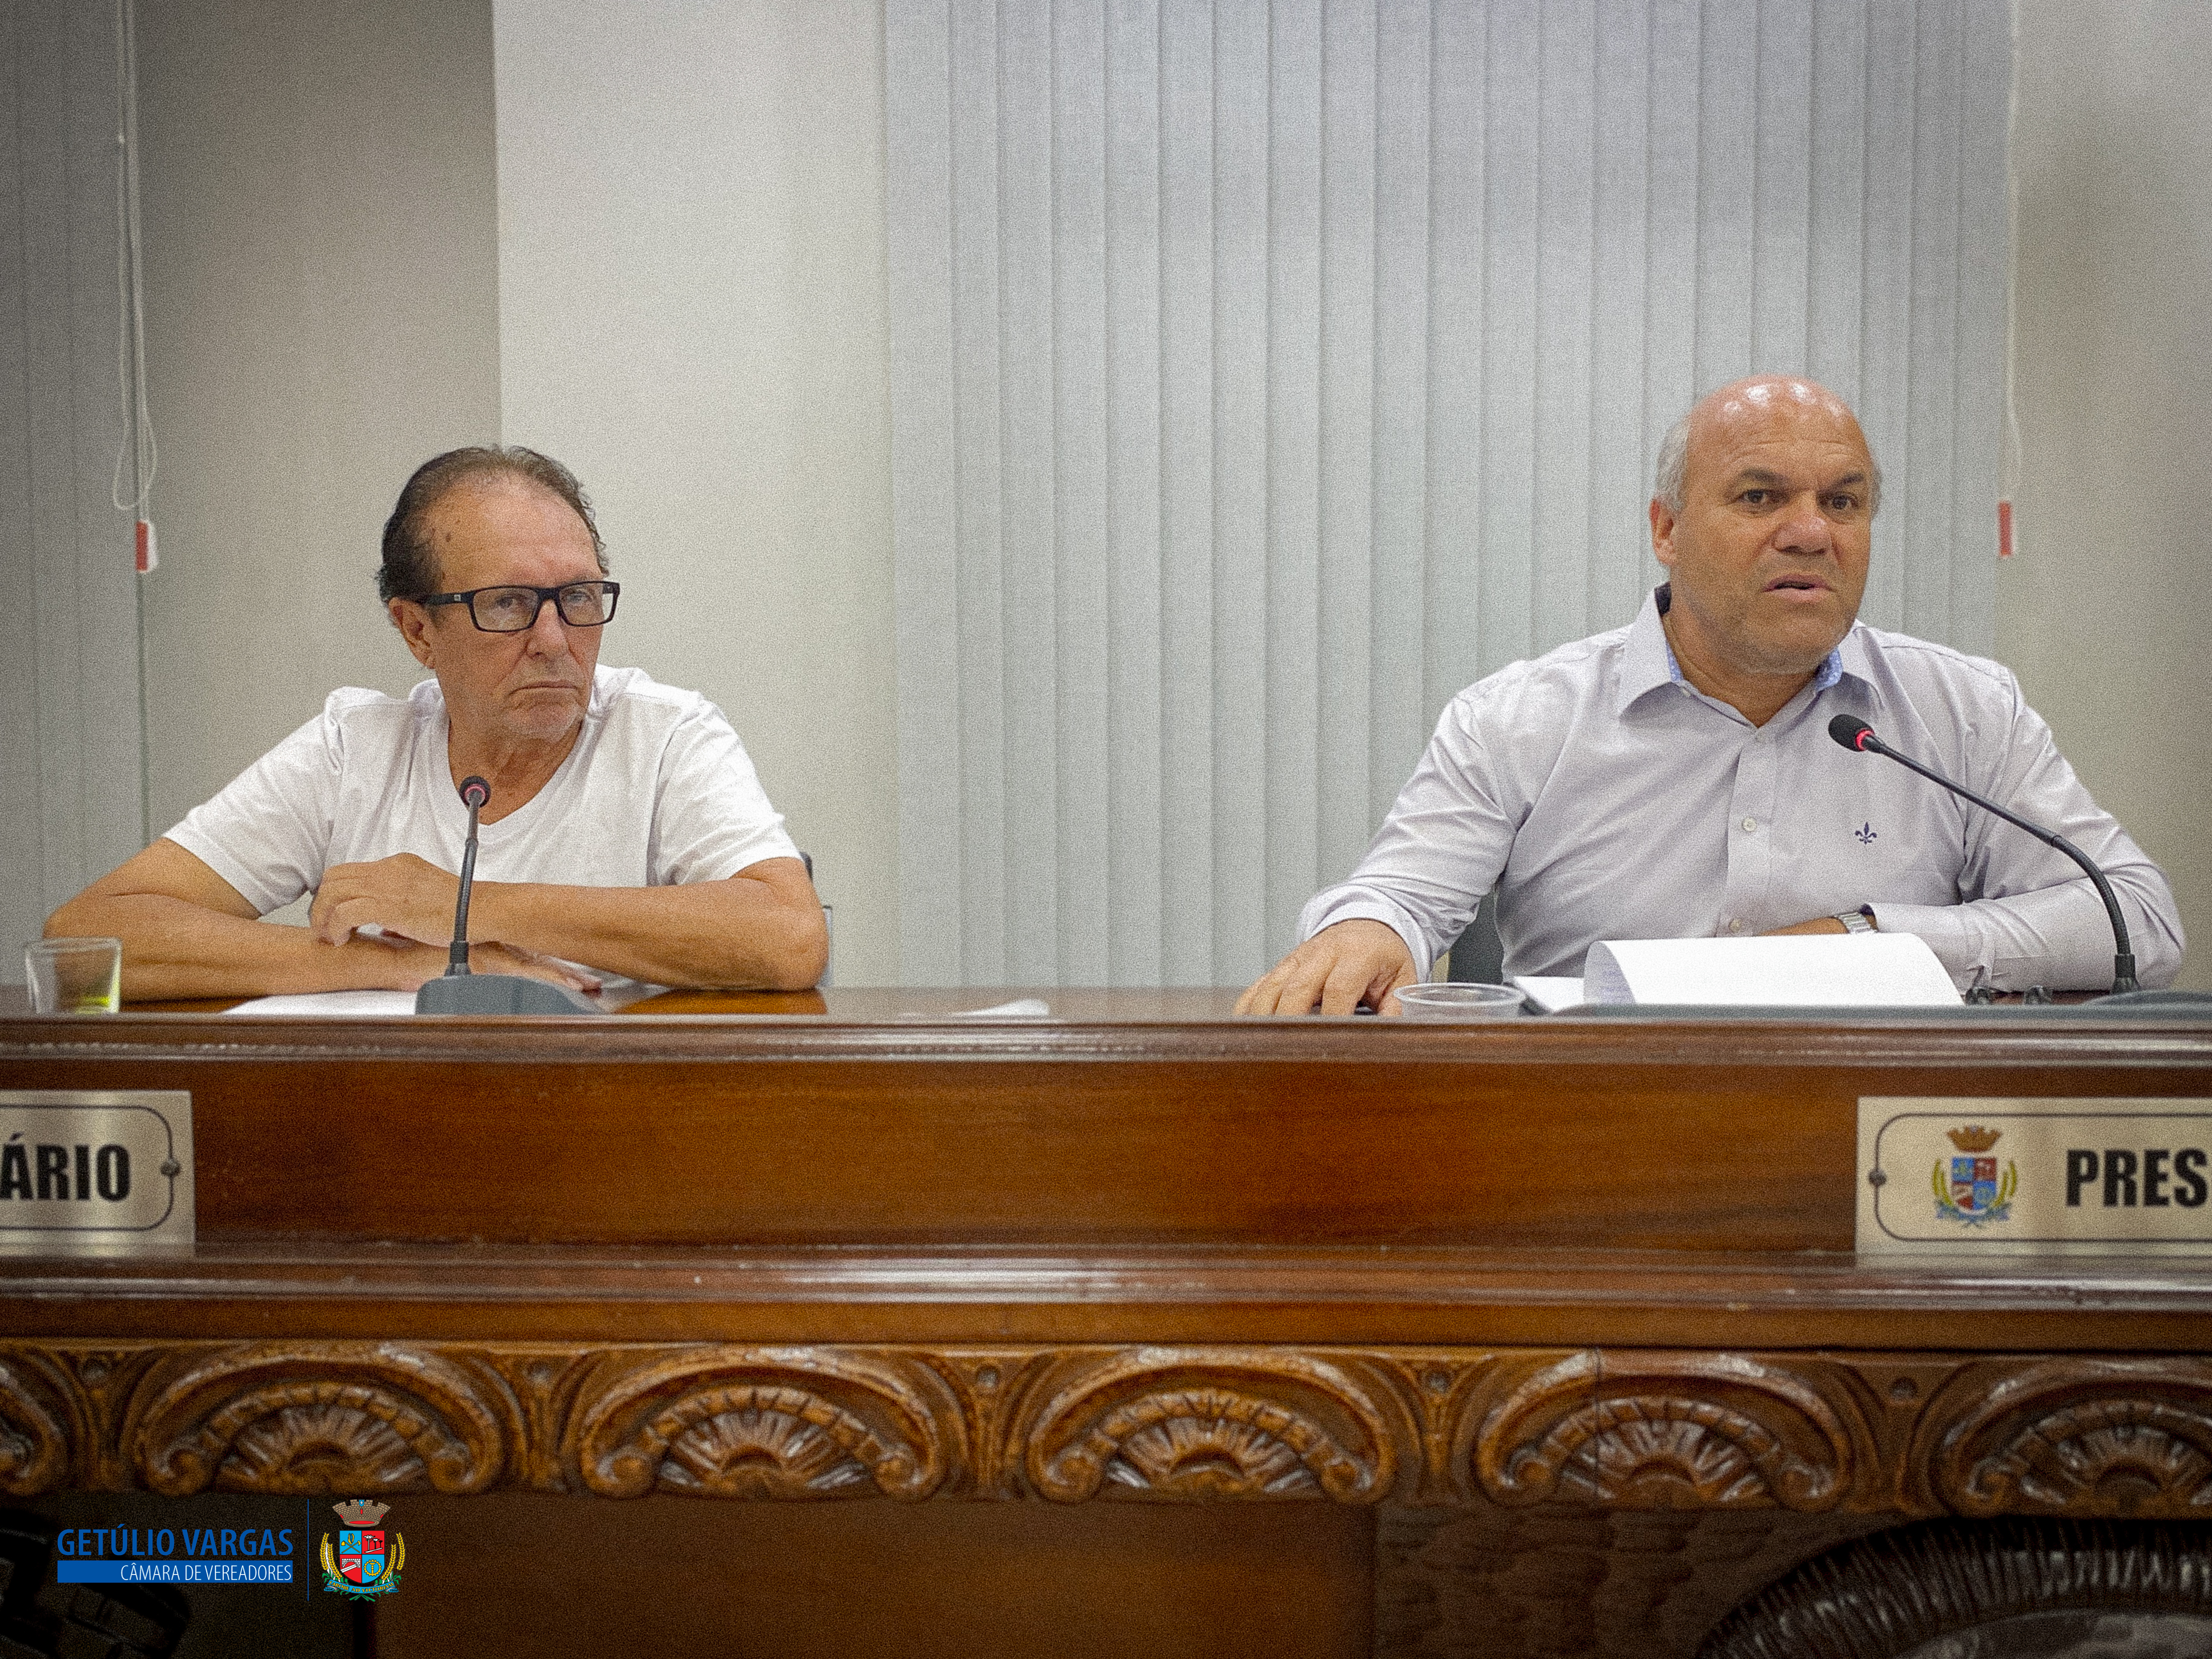 Câmara de Vereadores aprova indicação de instalação de detectores de metal e contratação de policiais para escolas municipais em Getúlio Vargas